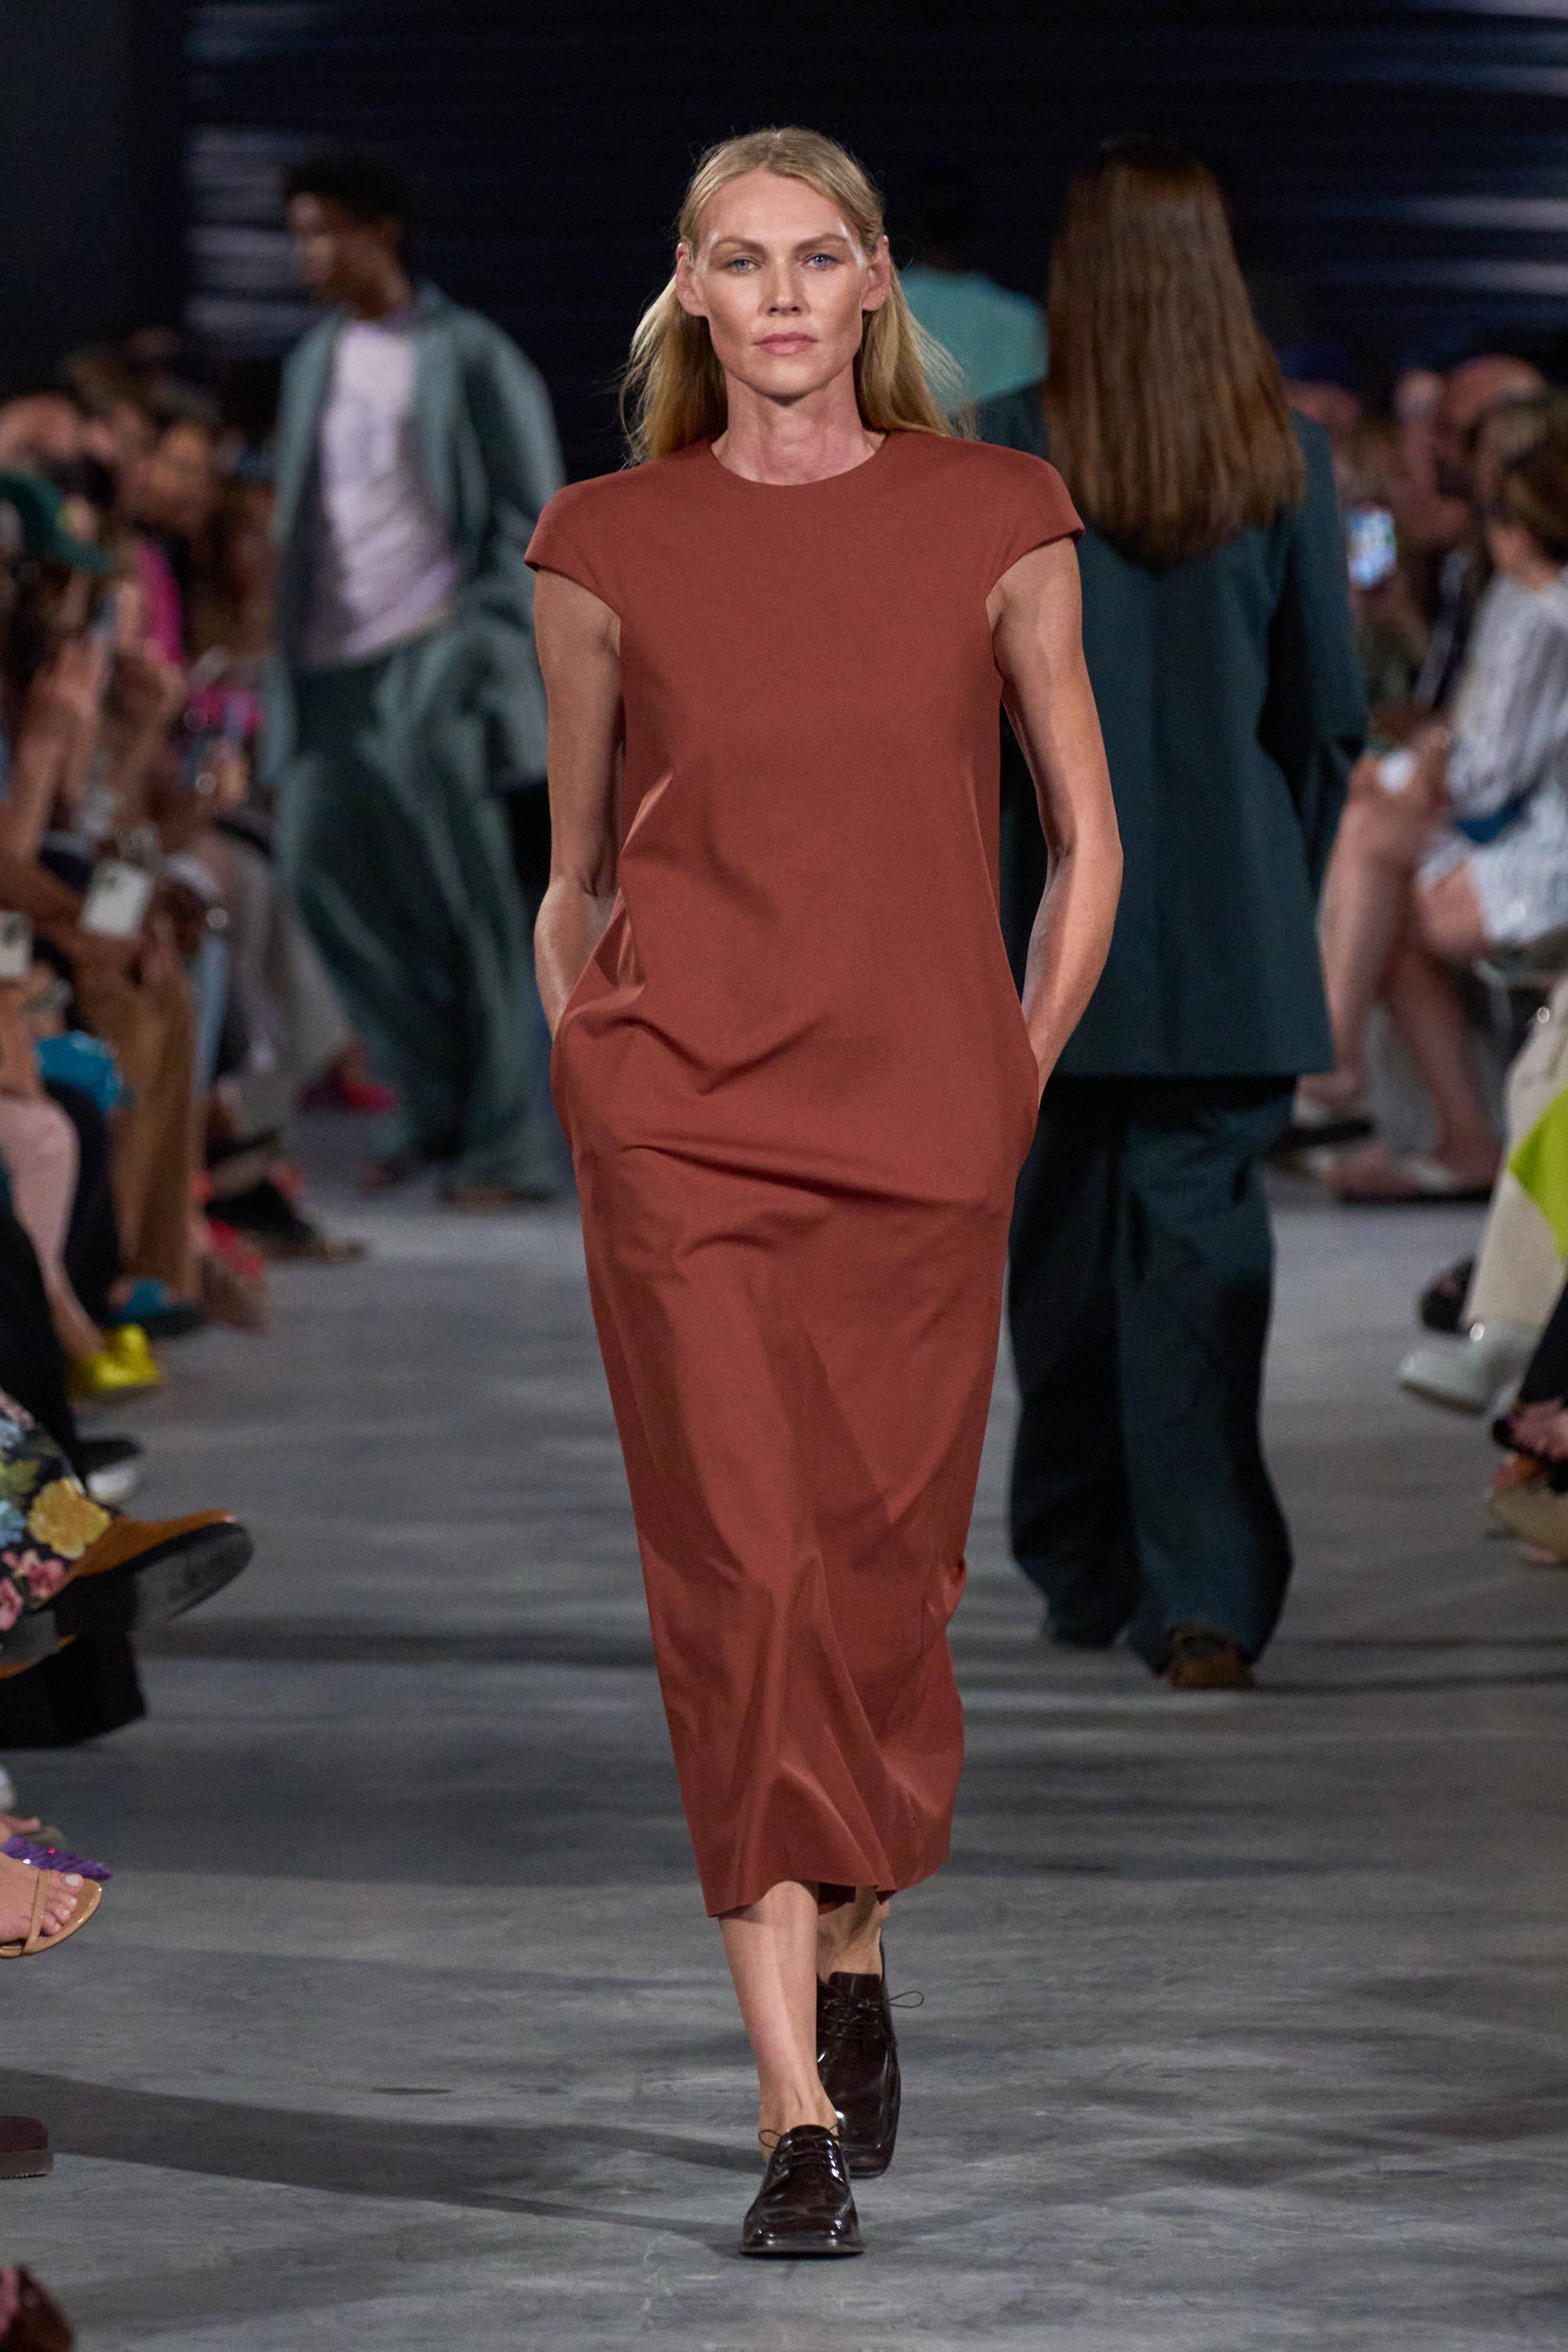 Model on a runway wearing cap sleeve dress